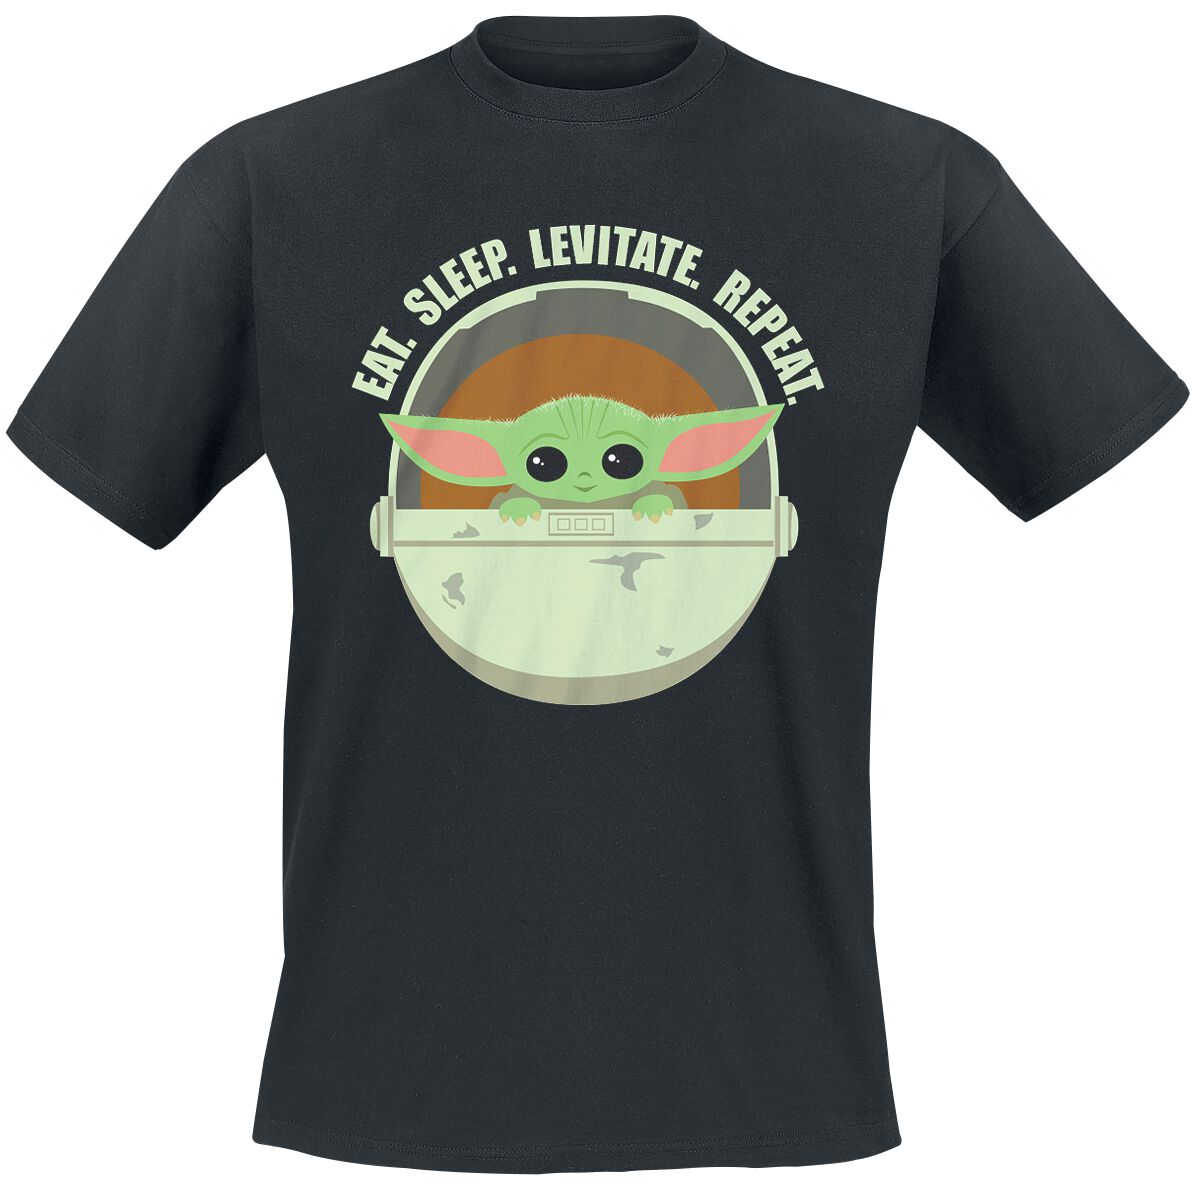 Star Wars T-Shirt - The Mandalorian - Eat. Sleep. Levitate. Repeat. - Grogu - S bis 4XL - für Männer - Größe 3XL - schwarz  - Lizenzierter Fanartikel